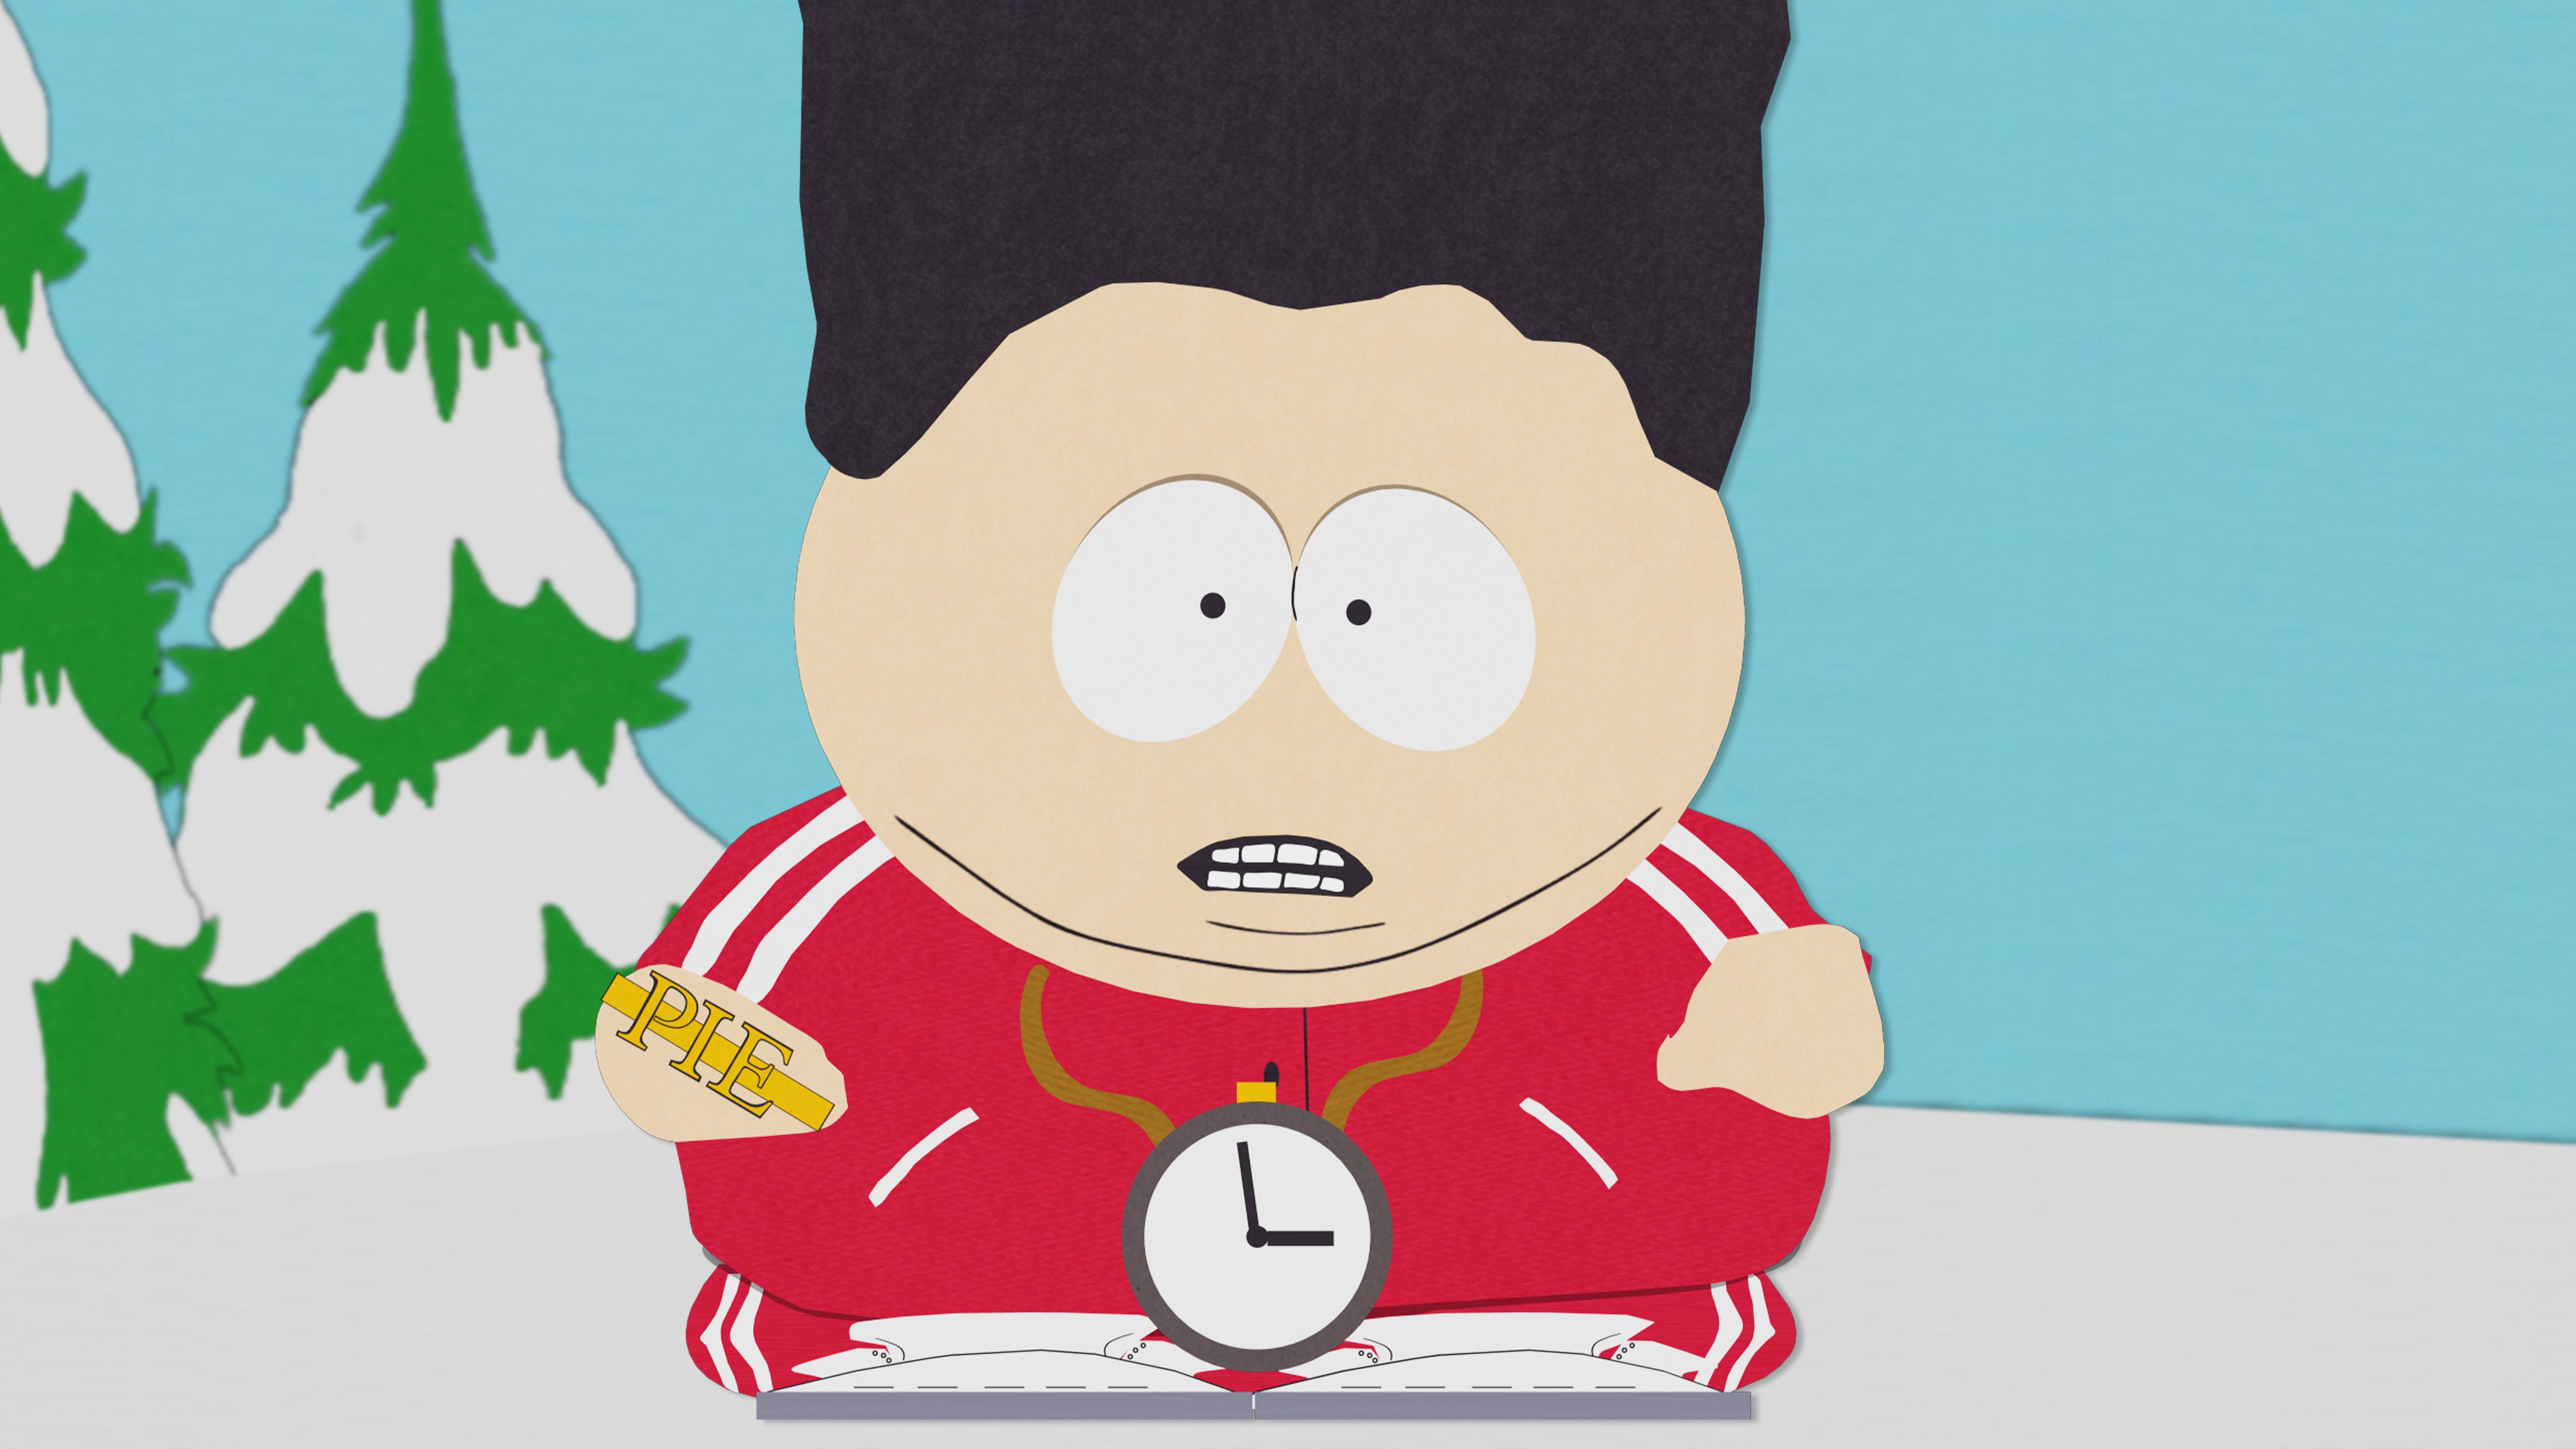 South Park - Season 2, Ep. 7 - Cidade à beira do sempre - Full